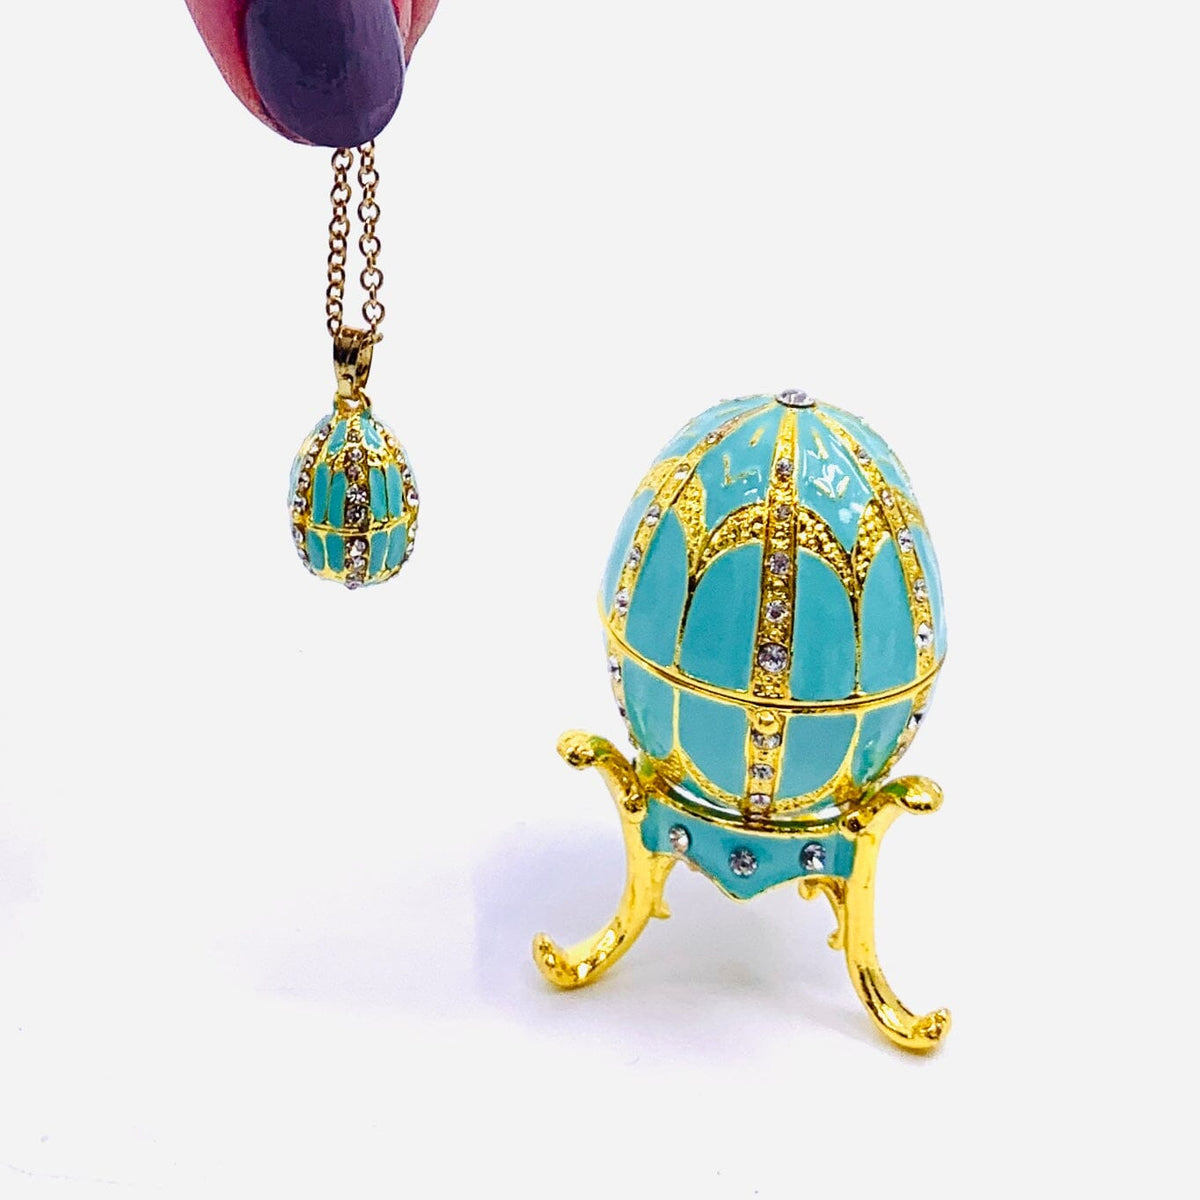 Bejeweled Enamel Trinket Box and Pendant 25, Turquoise Faberge Style Egg